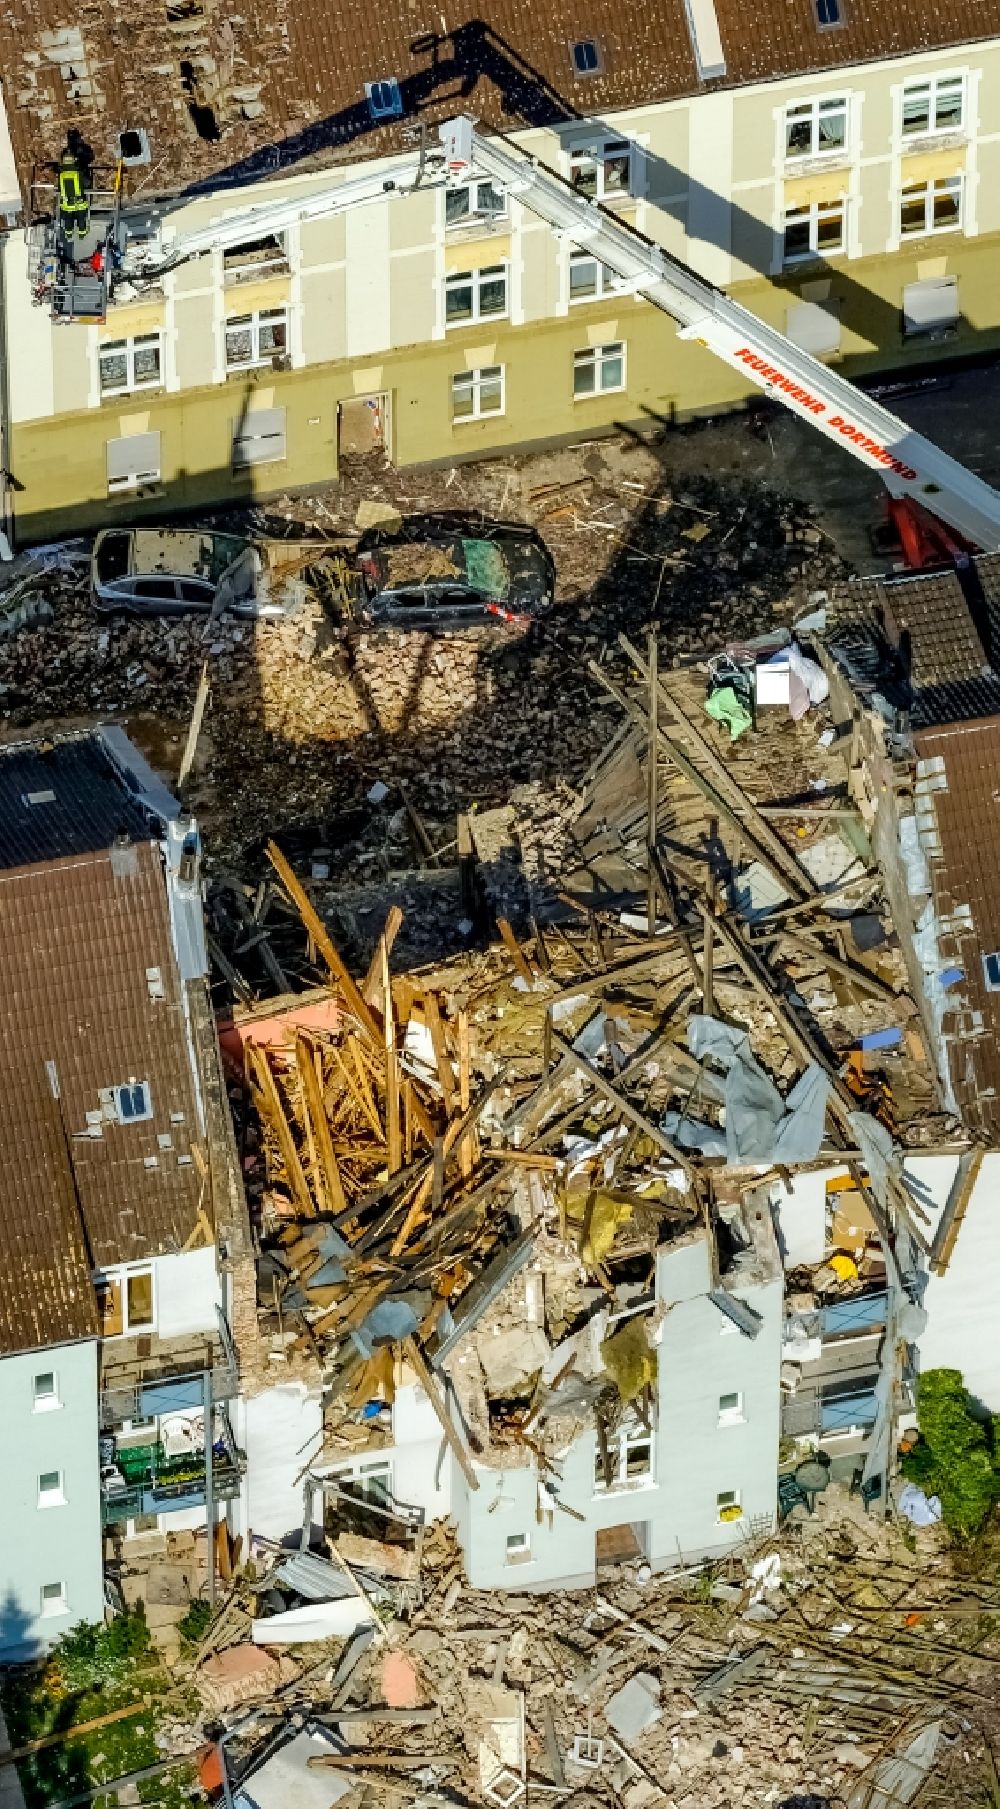 Dortmund von oben - Explosion im Dachbereich in einem Reihenhaus der Mehrfamilienhaussiedlung Teutonenstraße im Ortsteil Hörde in Dortmund im Bundesland Nordrhein-Westfalen